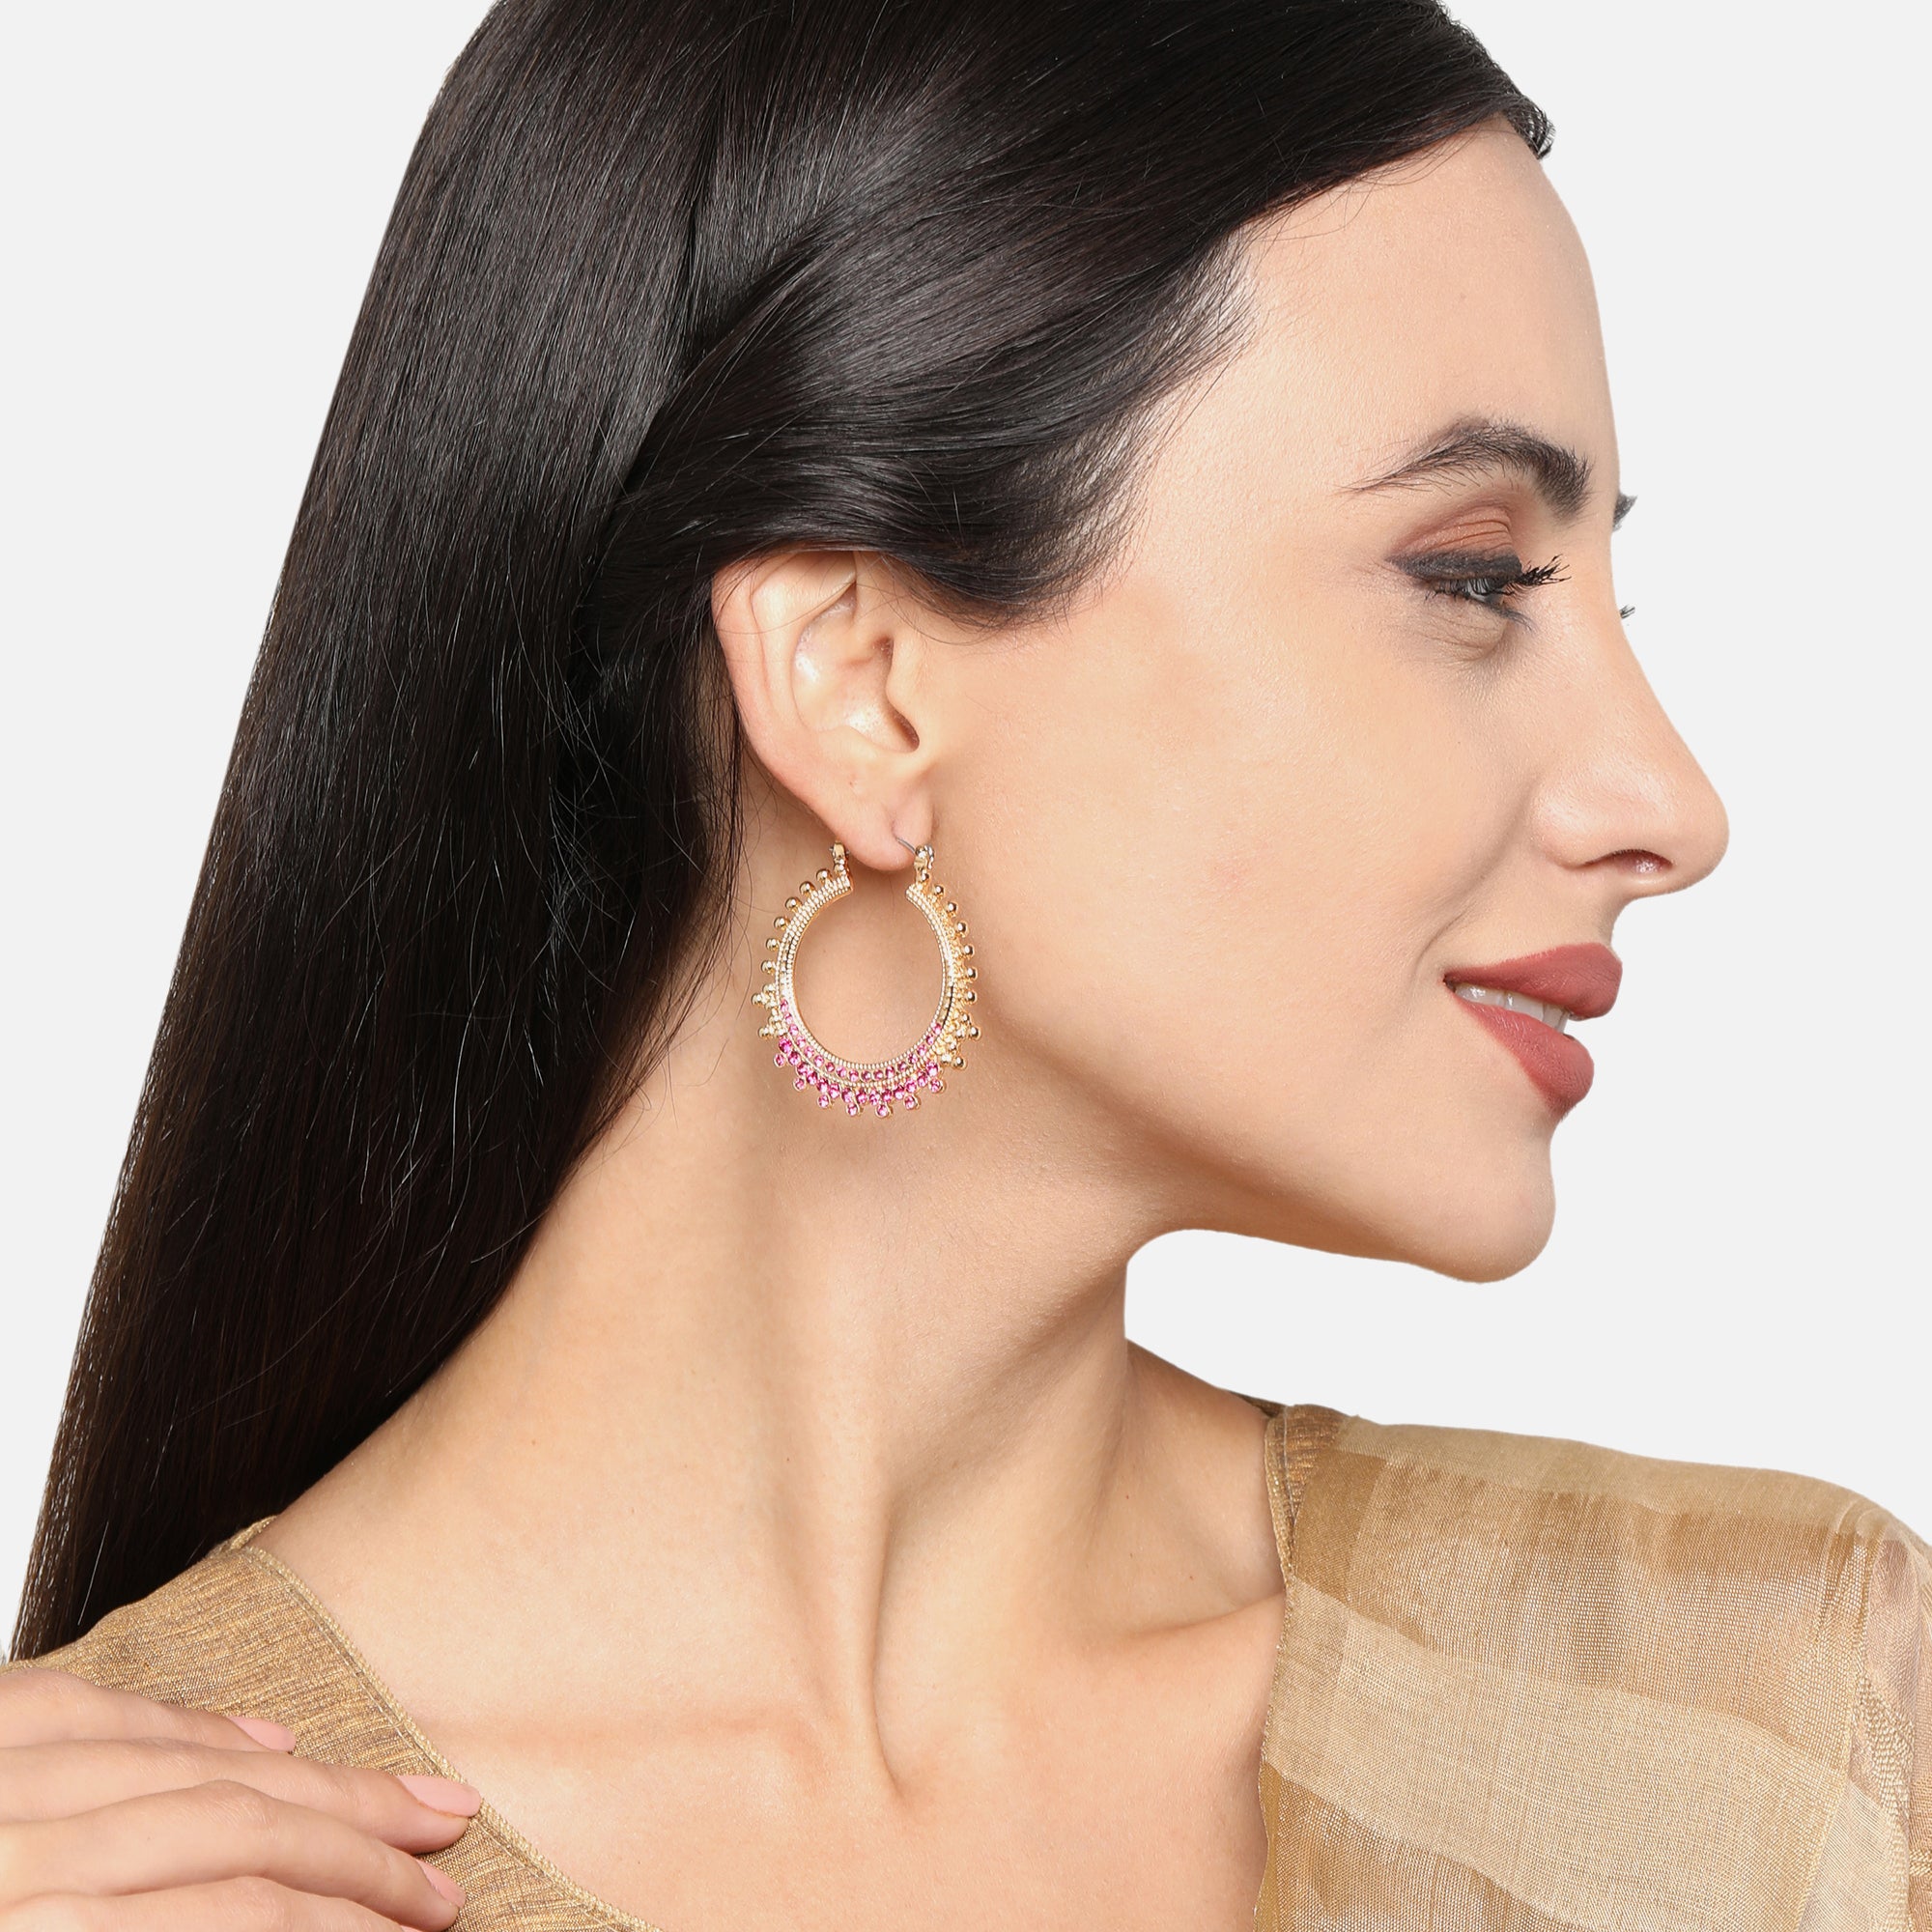 Buy Silver Triple Hoop Earrings Online - Accessorize India